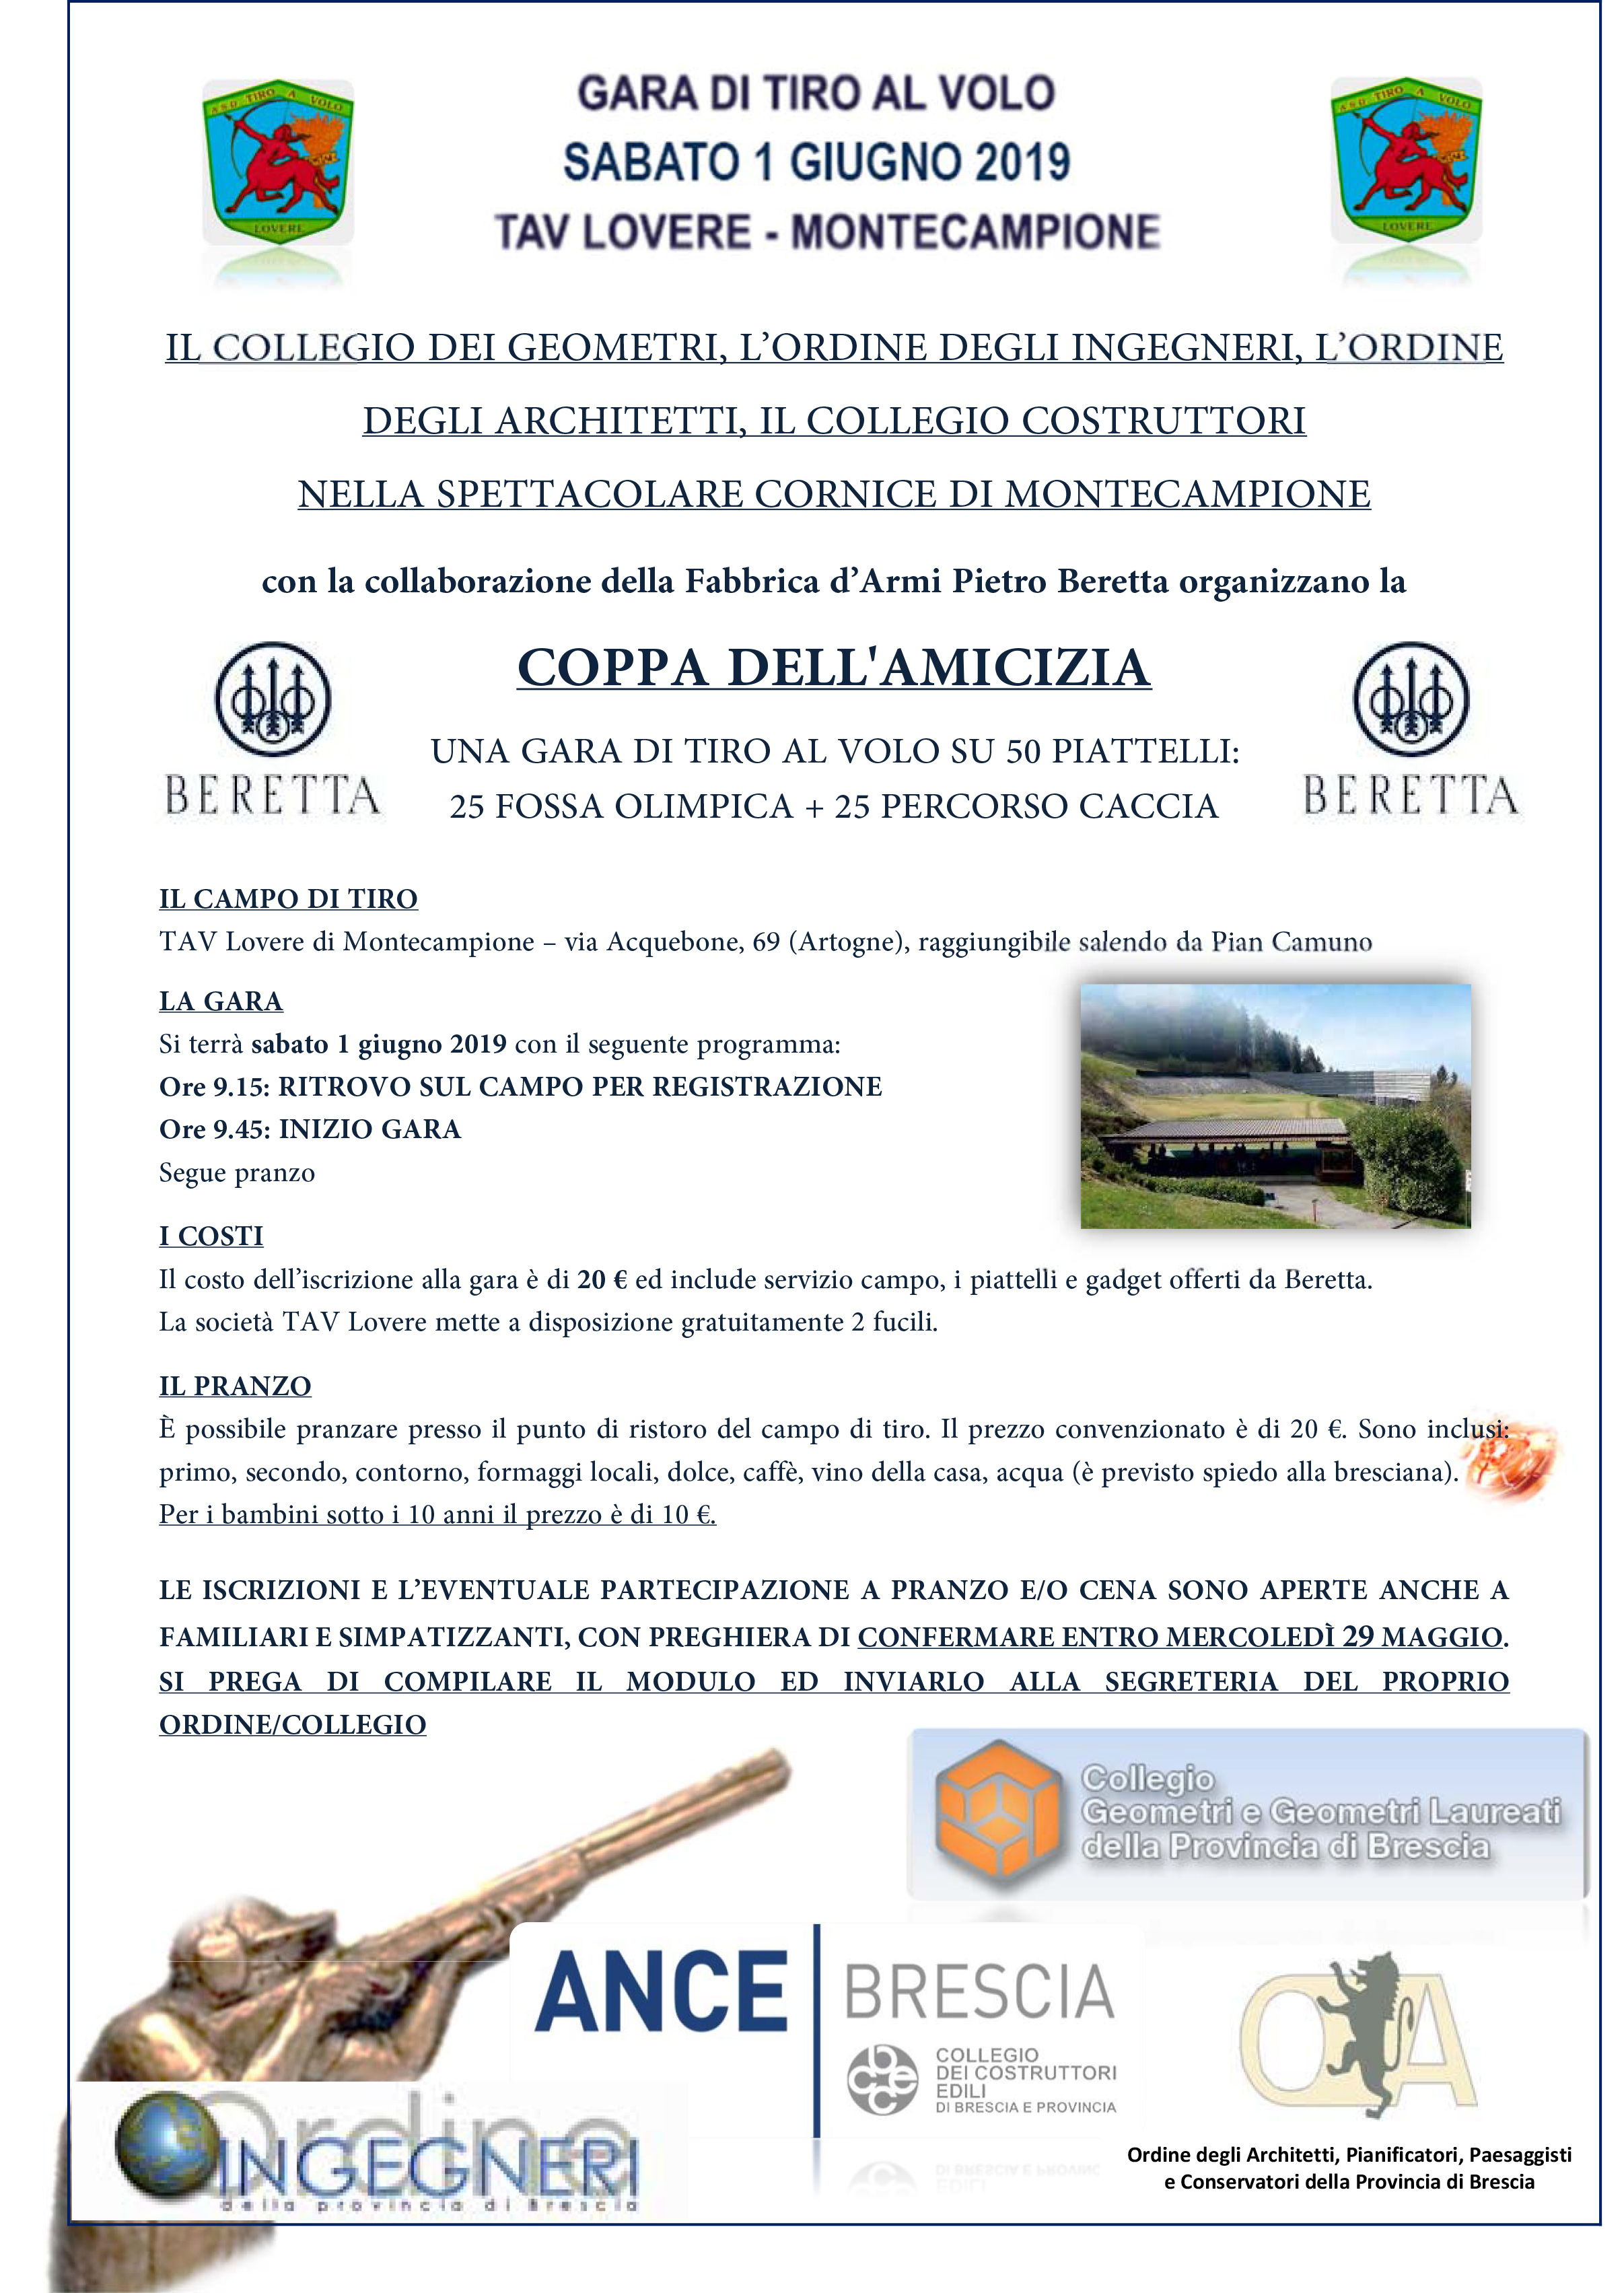 ANCE Brescia – Collegio Costruttori Edili: GARA INTERPROFESSIONALE DI TIRO AL VOLO A MONTECAMPIONE - SABATO 1 GIUGNO 2019